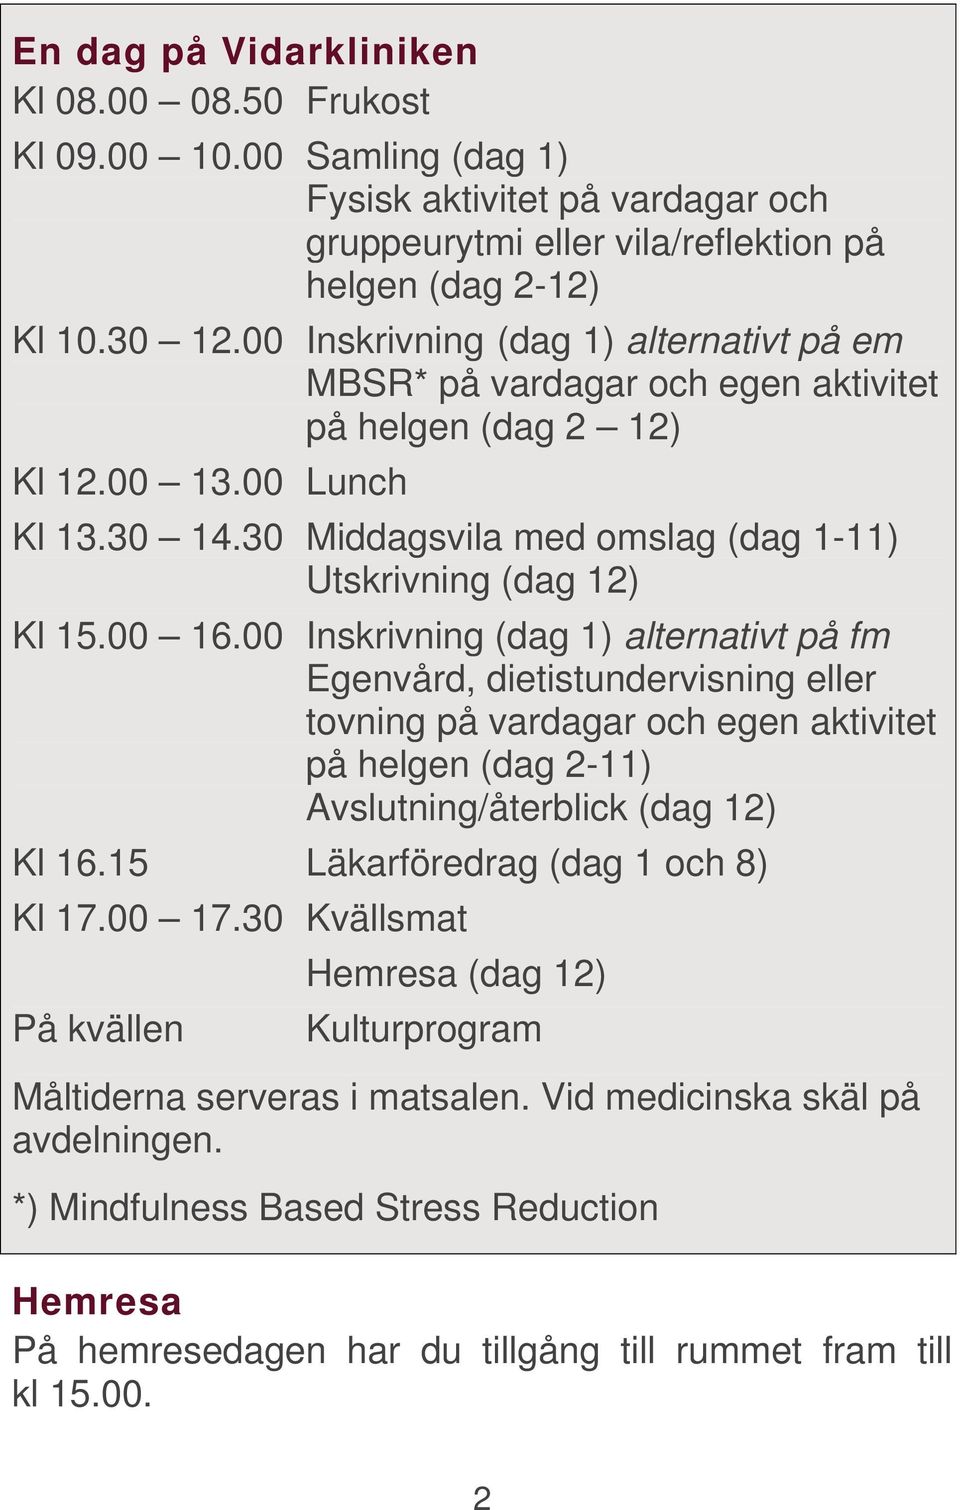 00 16.00 Inskrivning (dag 1) alternativt på fm Egenvård, dietistundervisning eller tovning på vardagar och egen aktivitet på helgen (dag 2-11) Avslutning/återblick (dag 12) Kl 16.